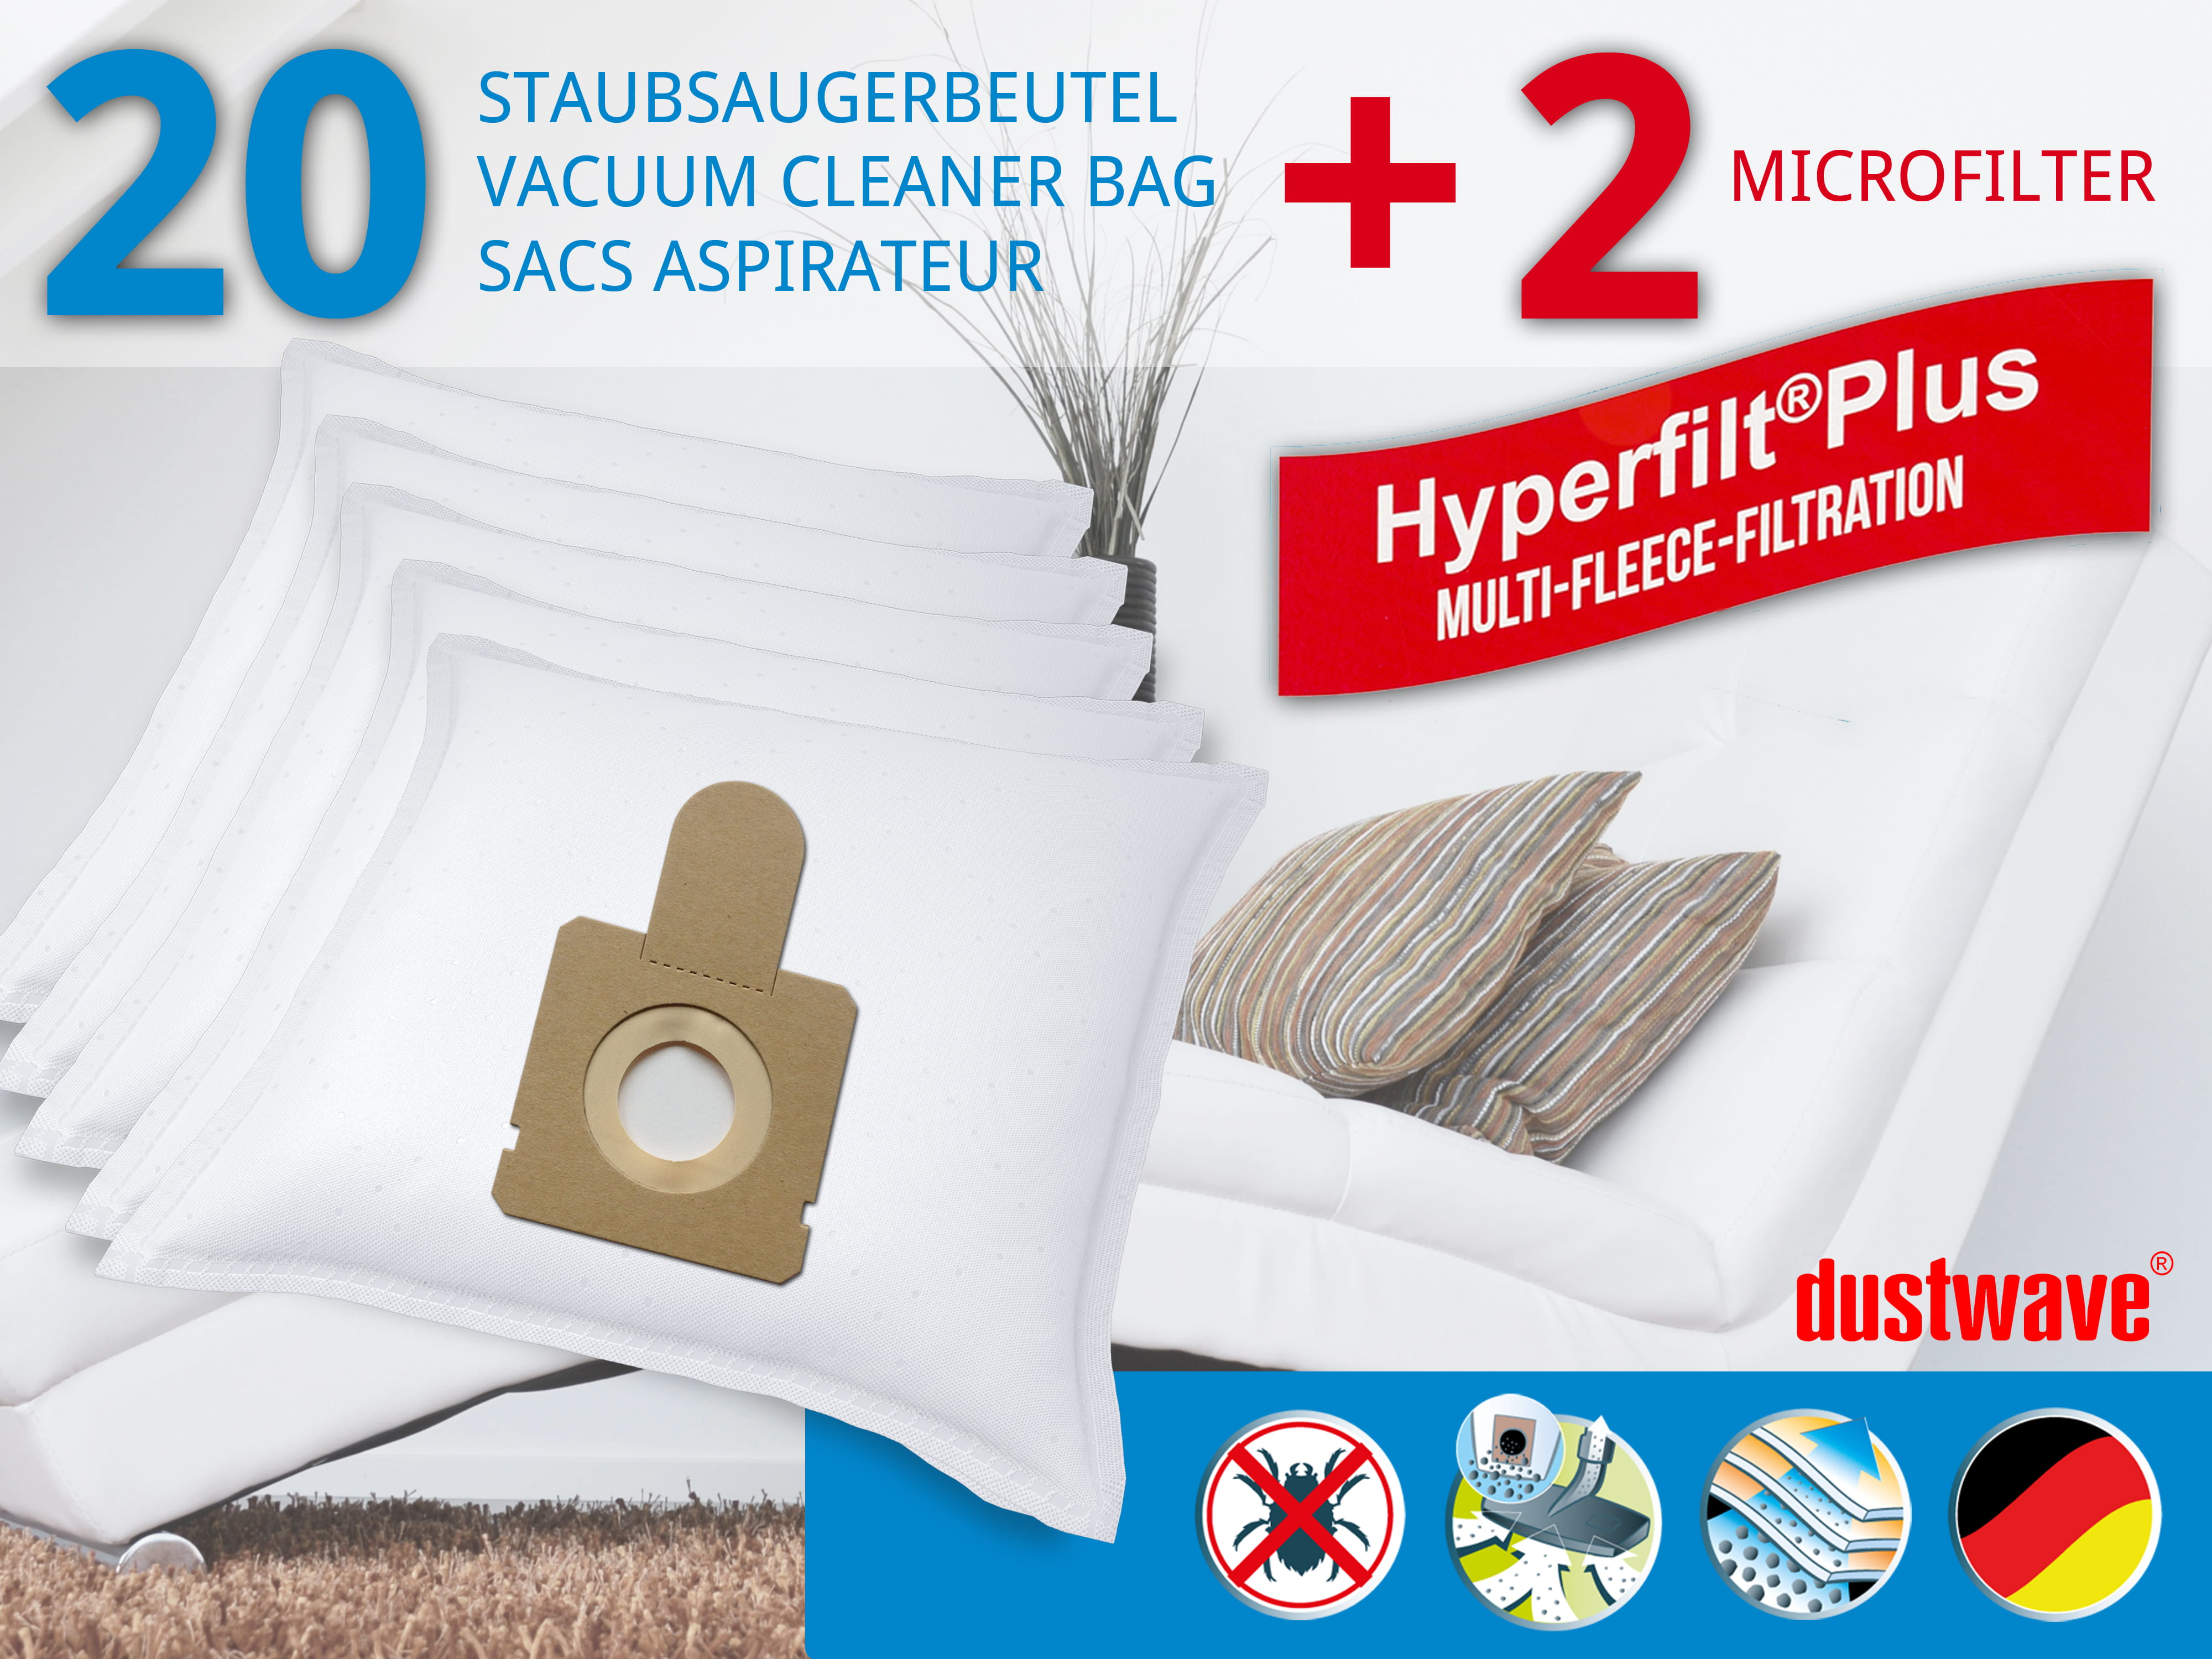 Dustwave® 20 Staubsaugerbeutel für Hoover TCP2105 - hocheffizient, mehrlagiges Mikrovlies mit Hygieneverschluss - Made in Germany